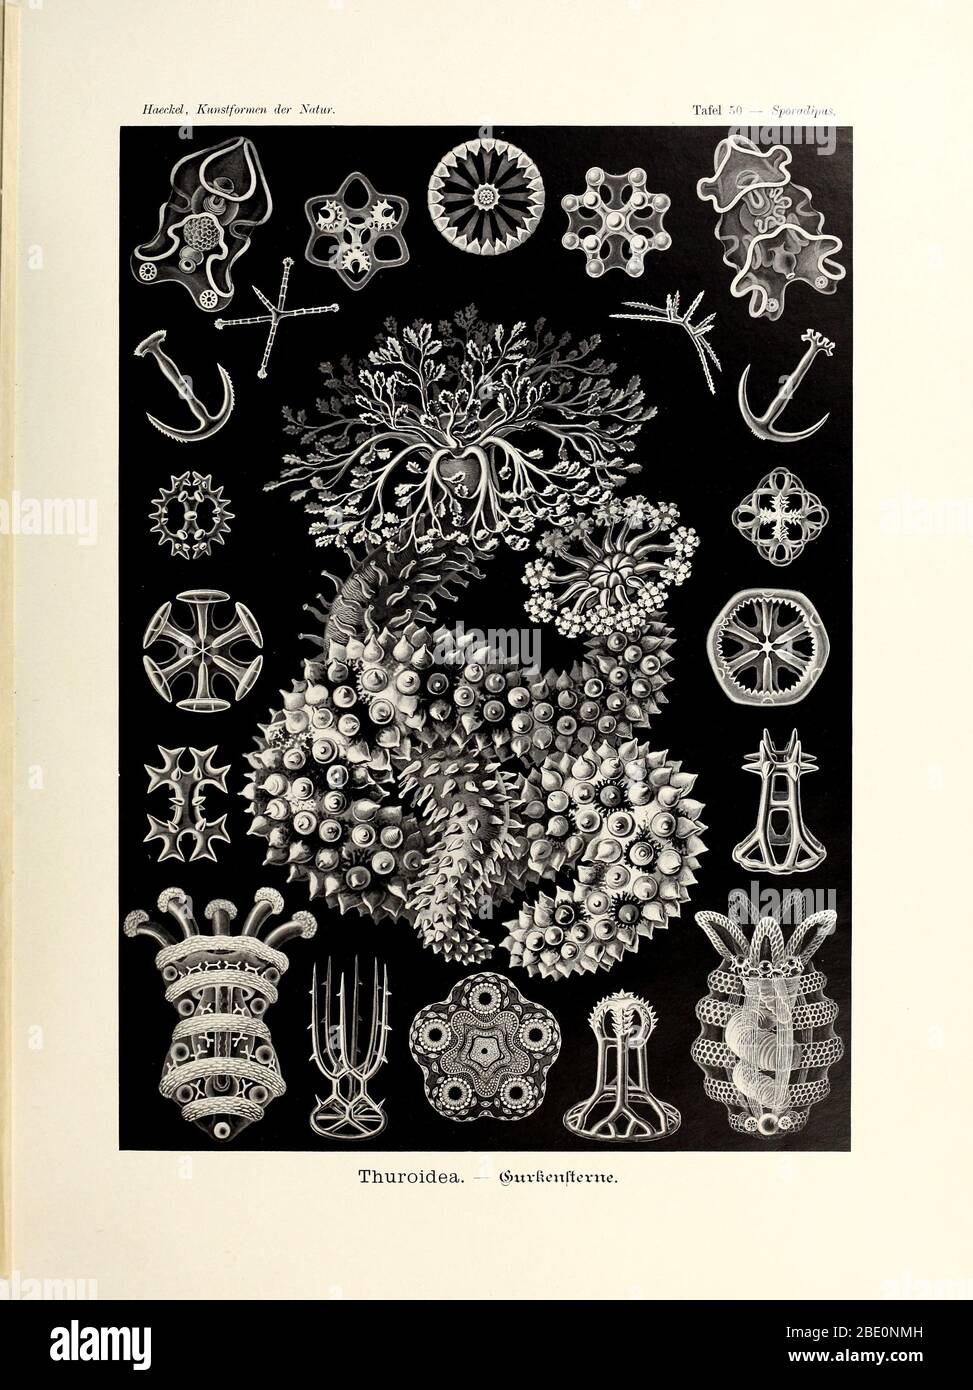 Thuroidea from Ernst Haeckel's Kunstformen der Natur, 1904 Stock Photo